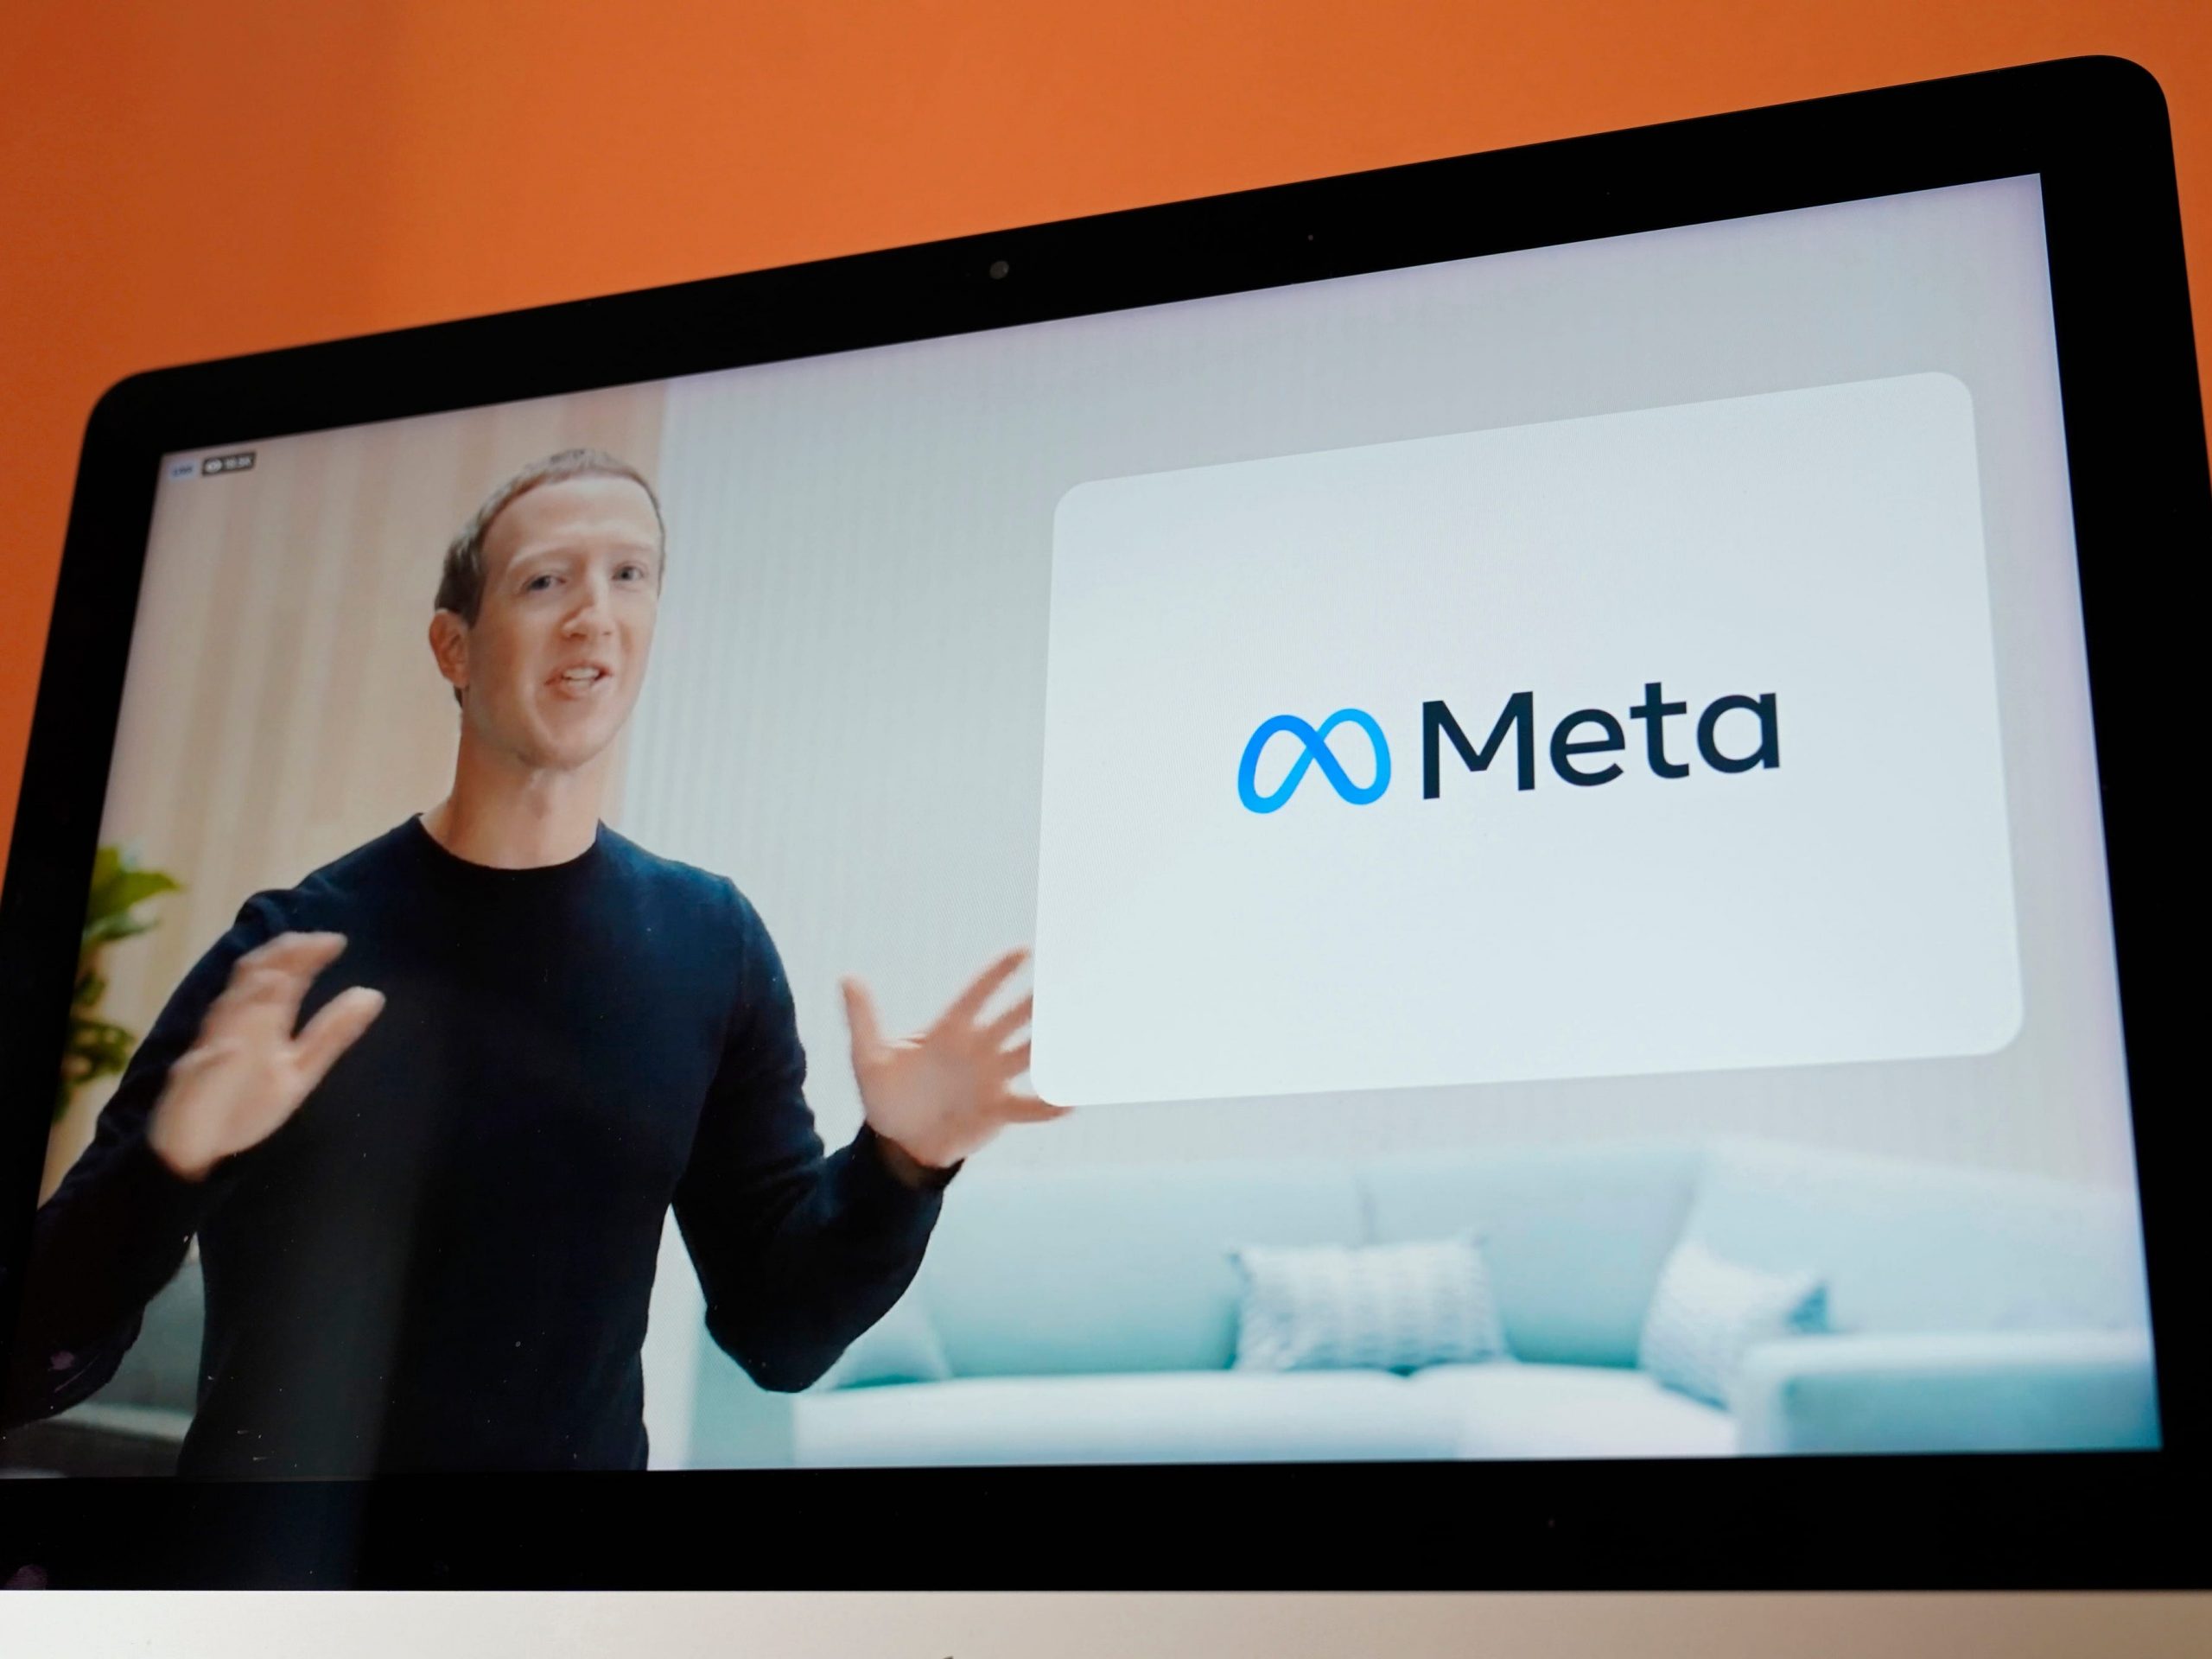 Facebook CEO Mark Zuckerberg announcing Meta